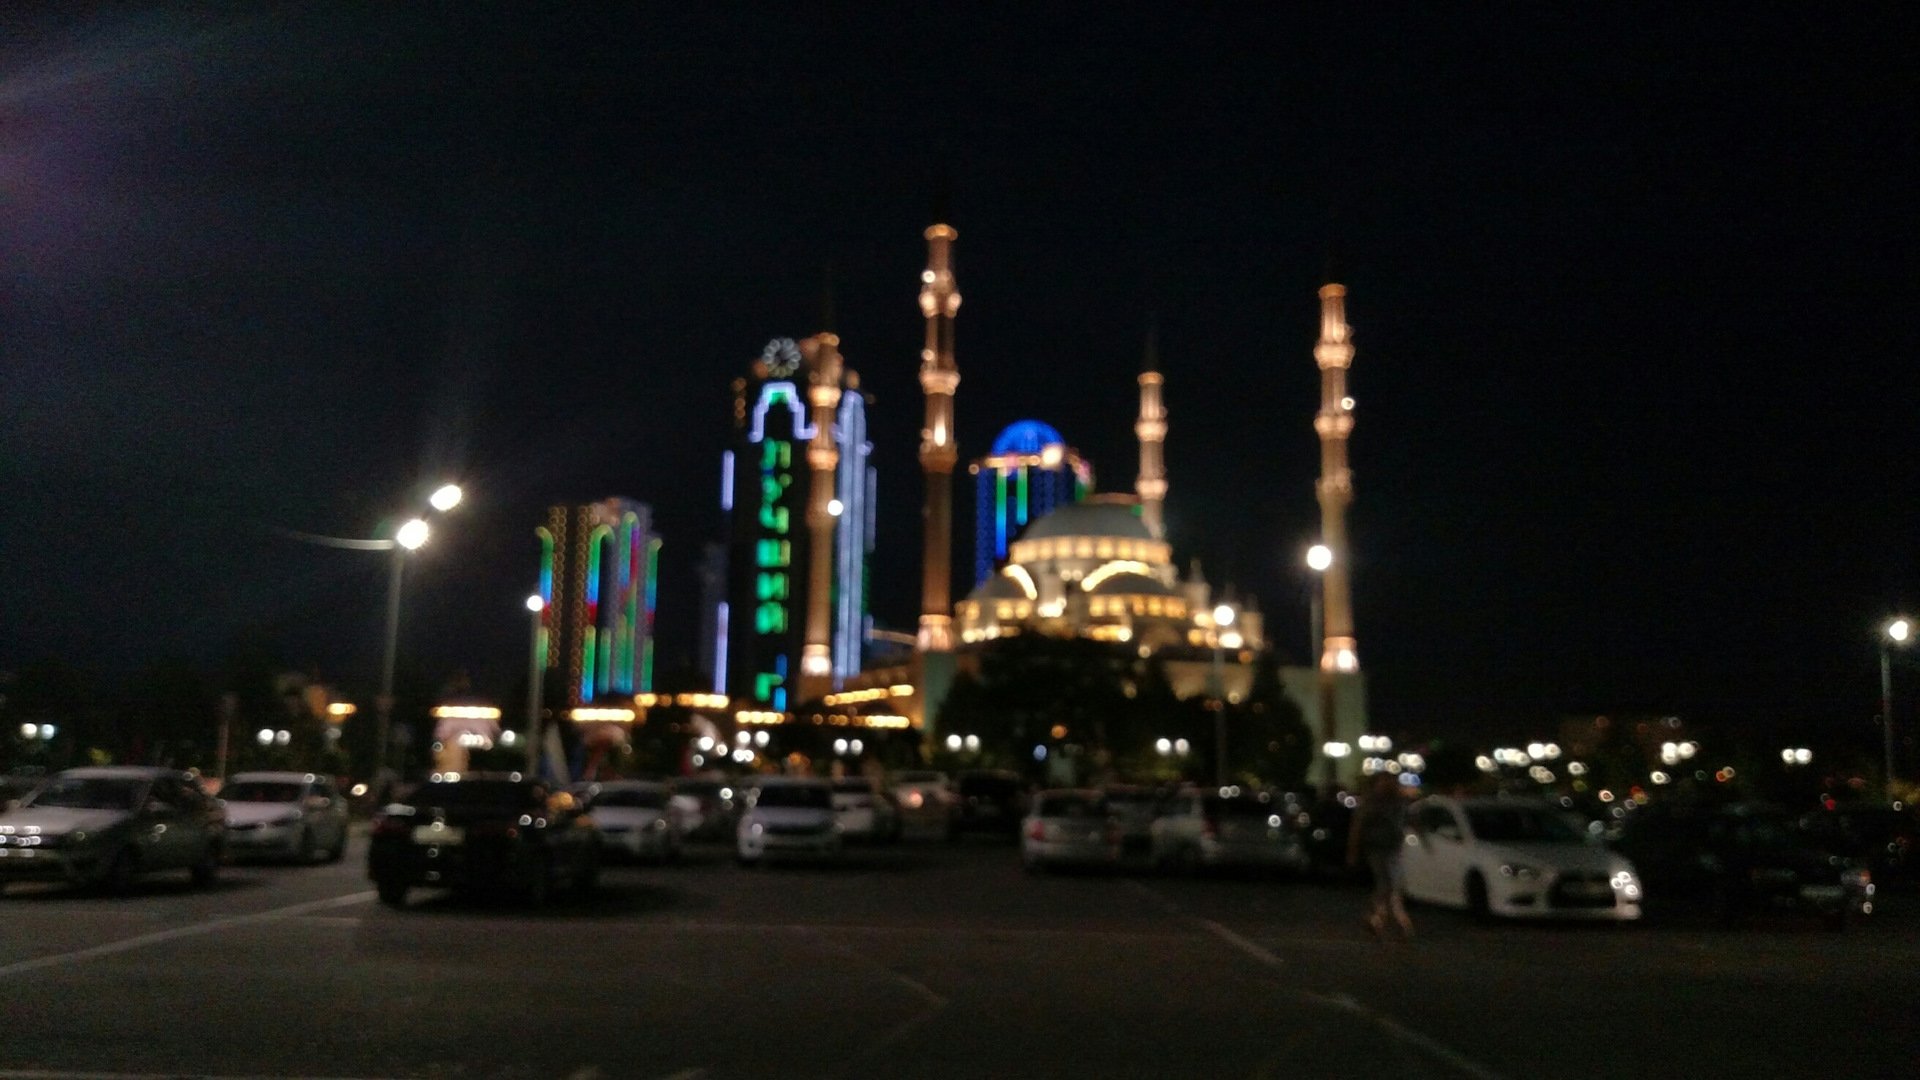 Мечеть в Чечне